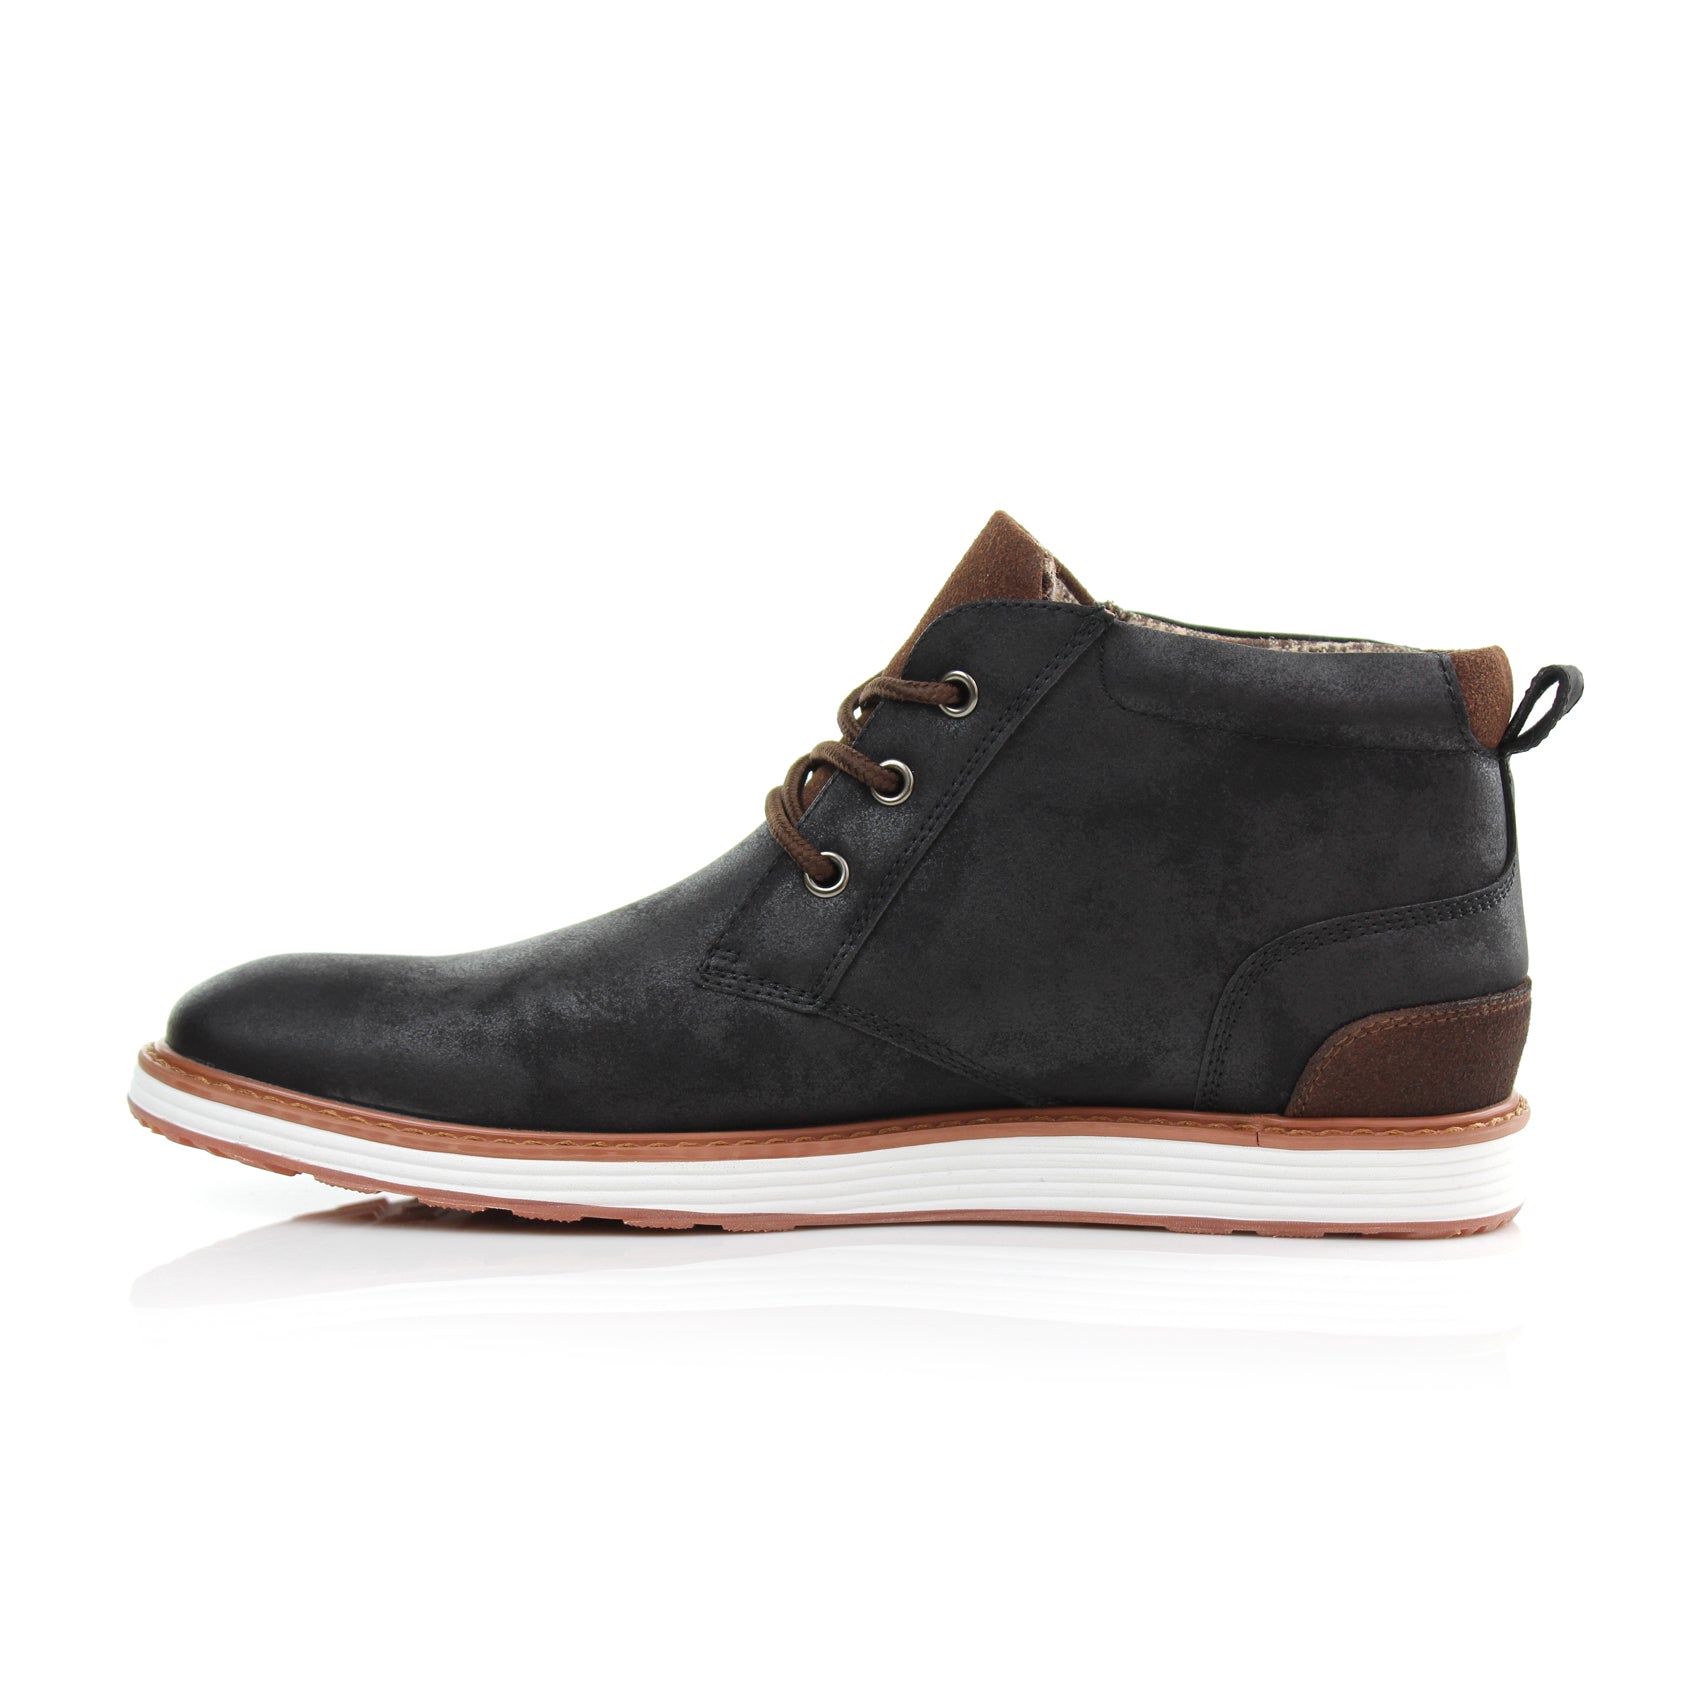 Sneaker Chukka Boots | Houstan by Ferro Aldo | Conal Footwear | Inner Side Angle View